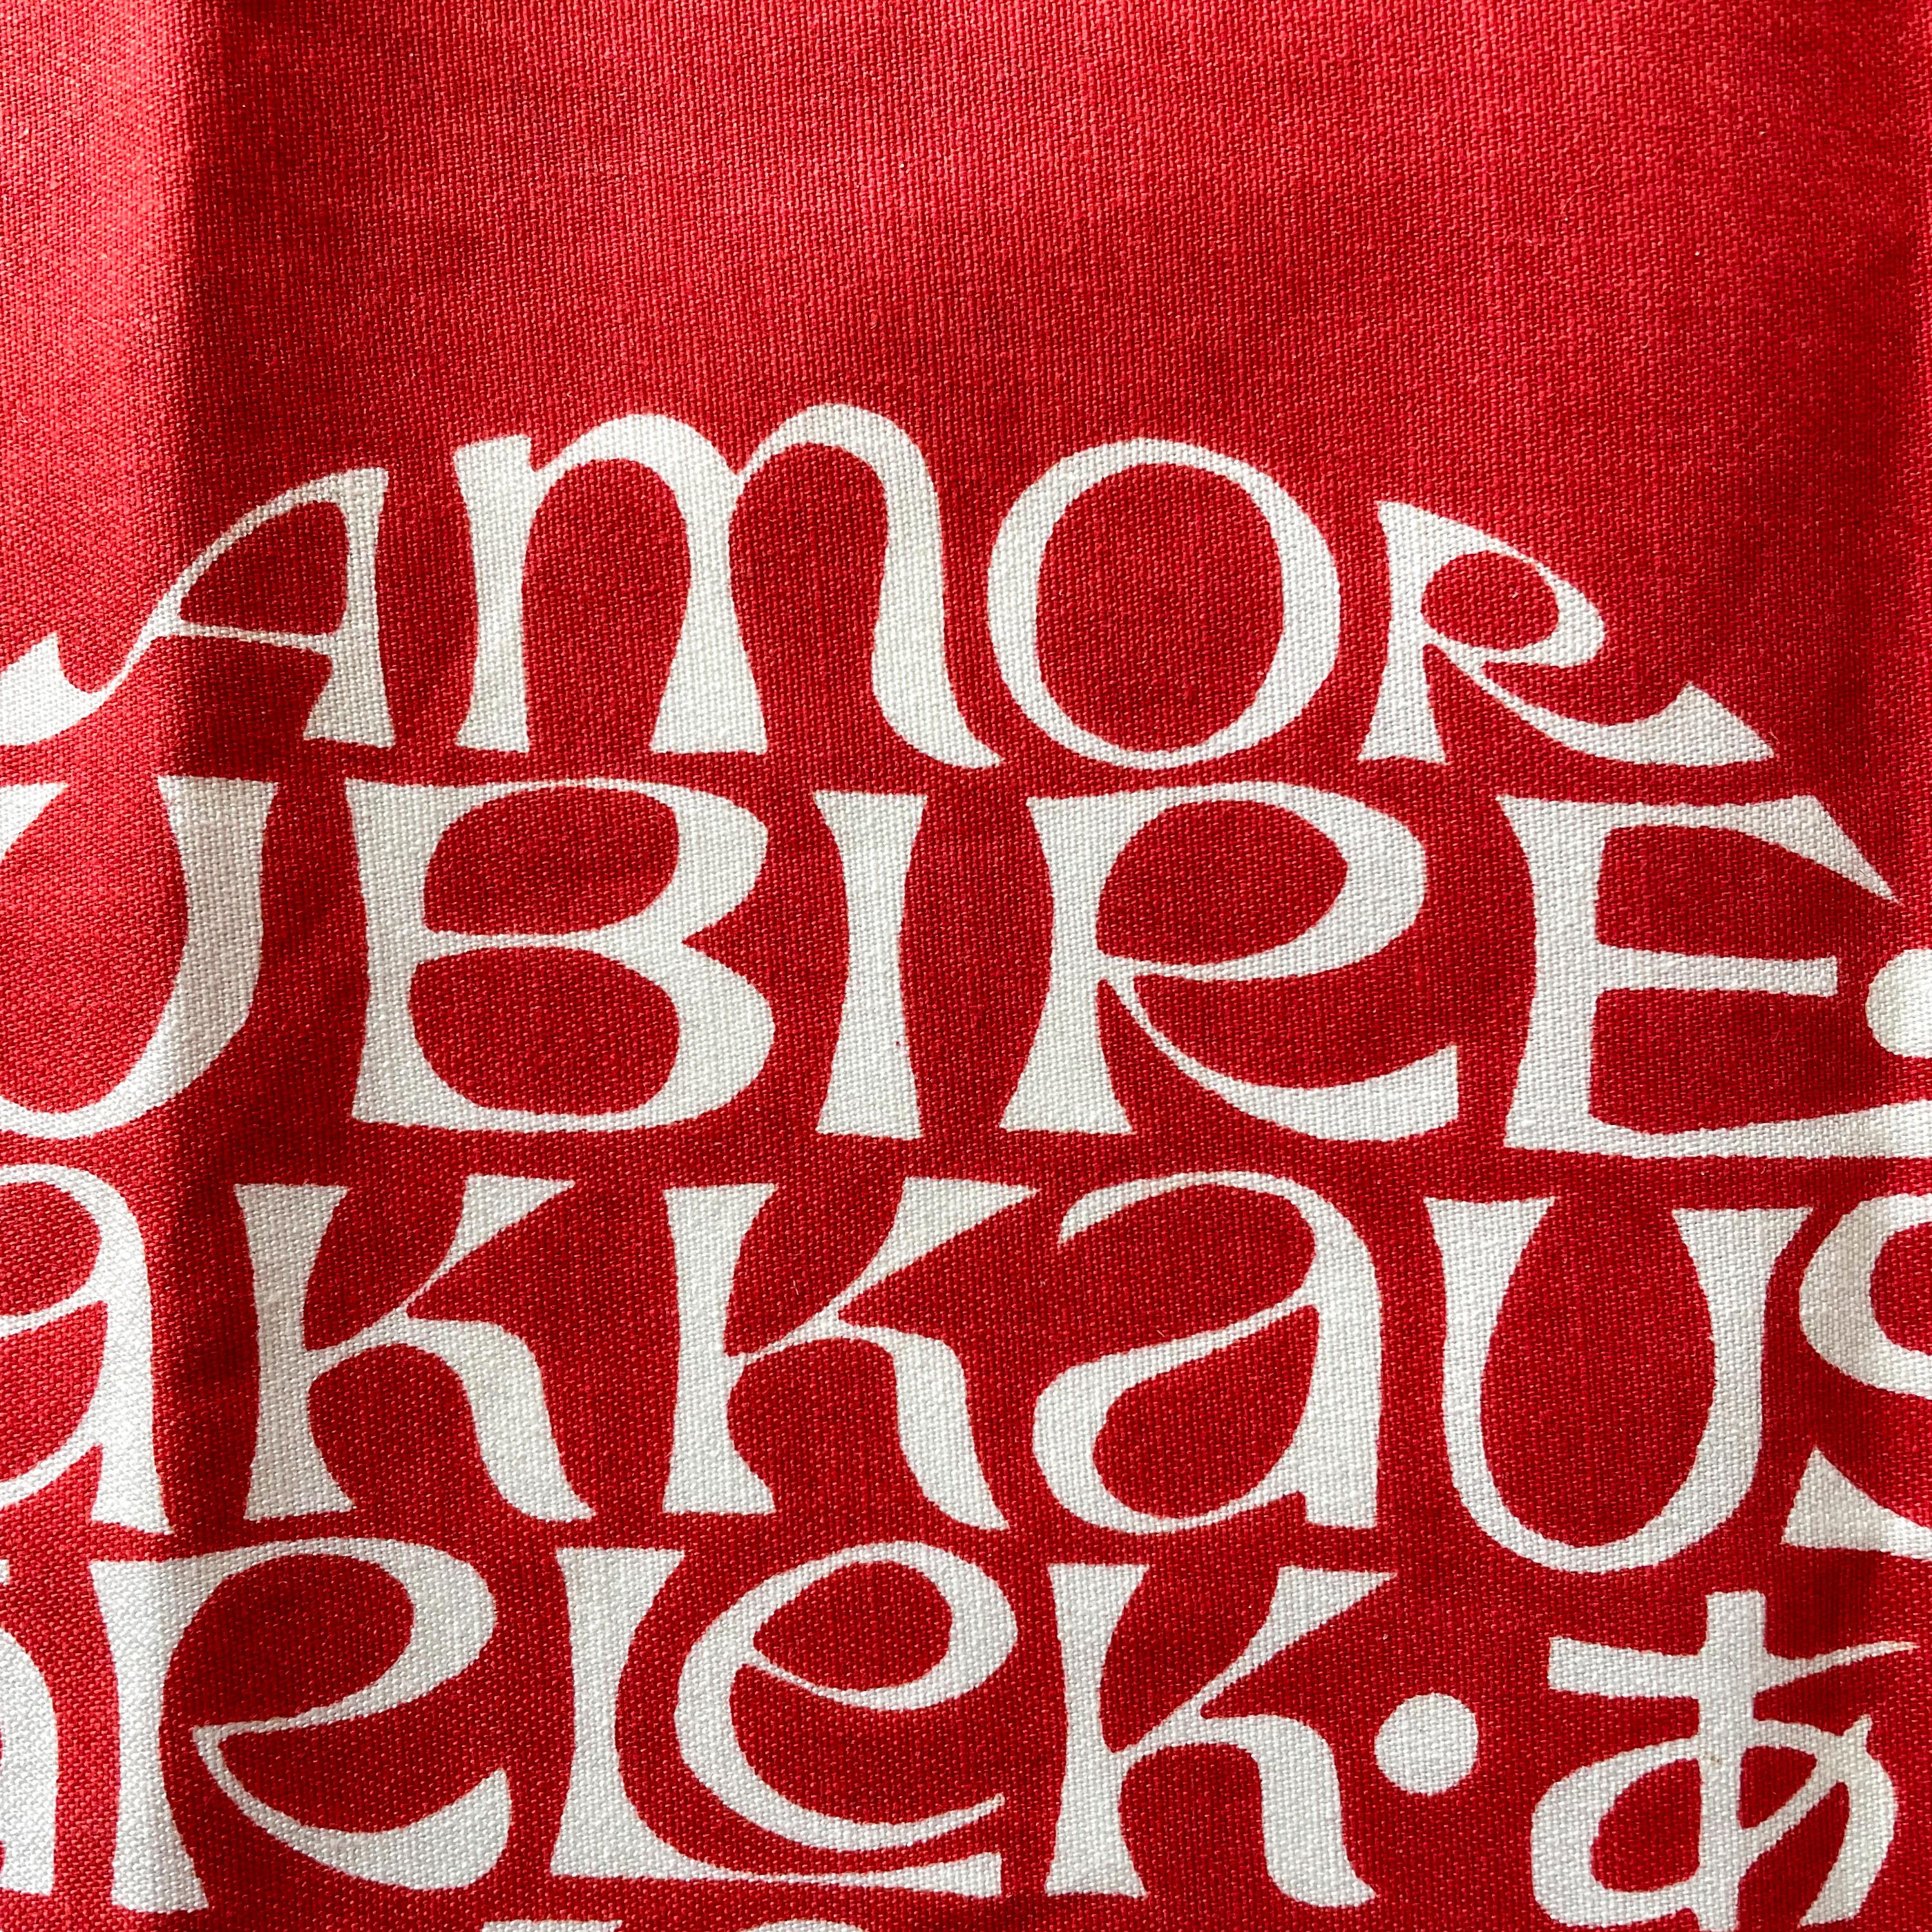 Vintage International Love Heart Textile, conçu par Alexander Girard en 1961 dans le cadre d'une série de coussins et vendu dans la boutique Textiles and Objects qu'il a créée pour Herman Miller. Produit comme panneau pour Herman Miller de la fin